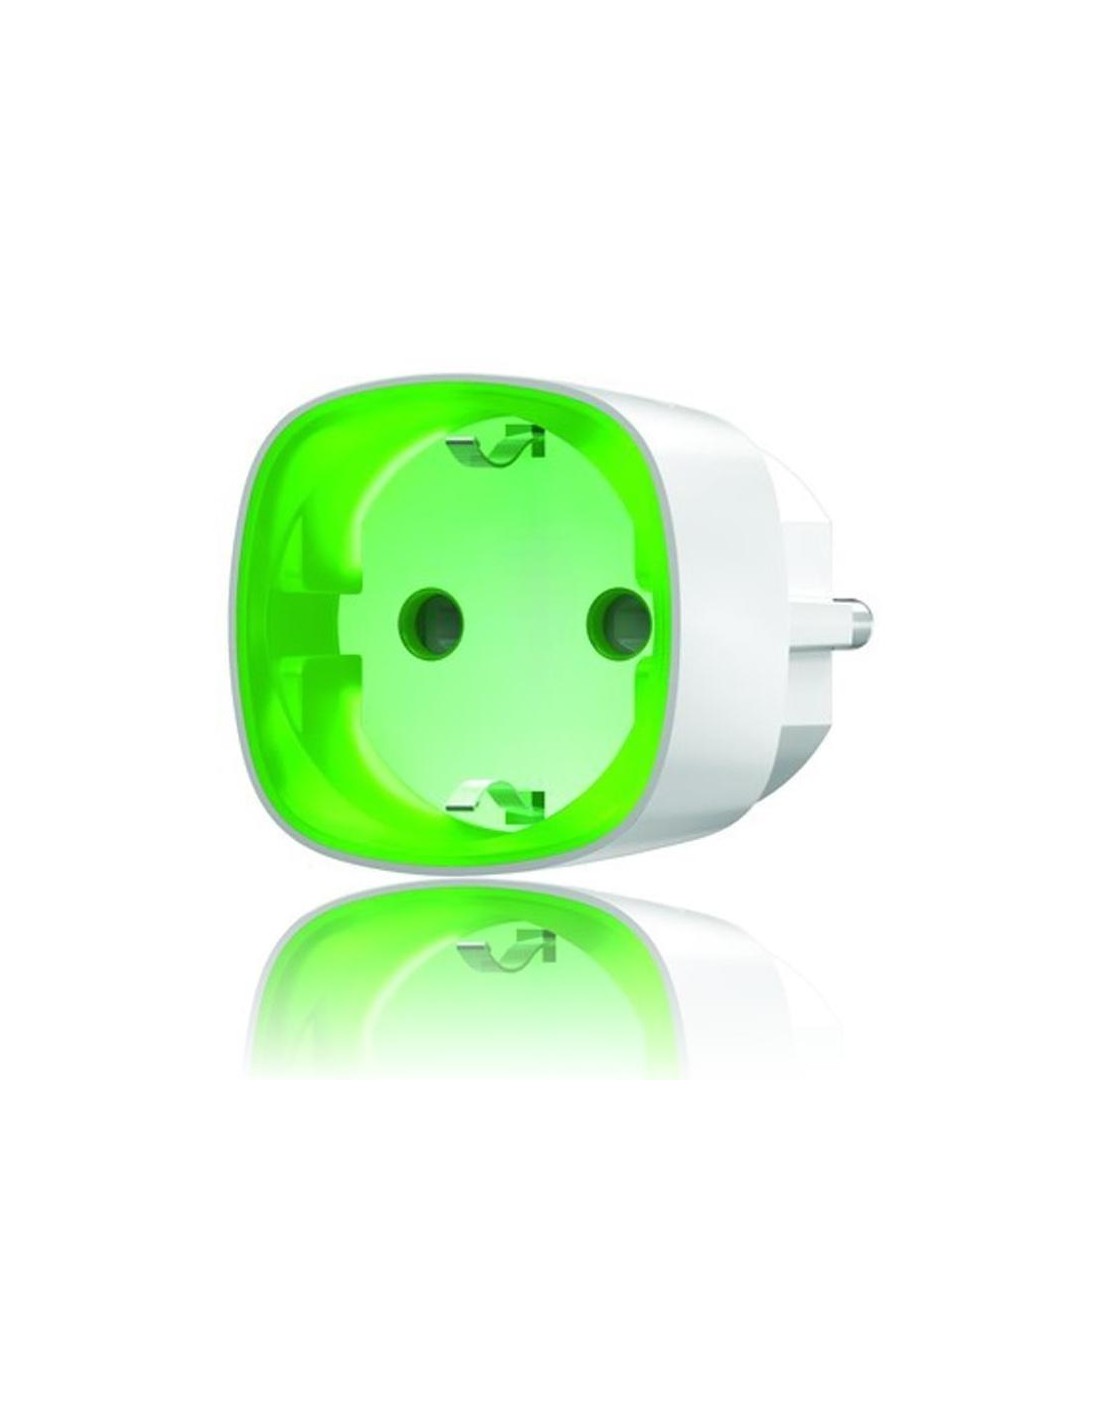 Ajax - Wireless smart plug with energy monitor (Ajax Socket)